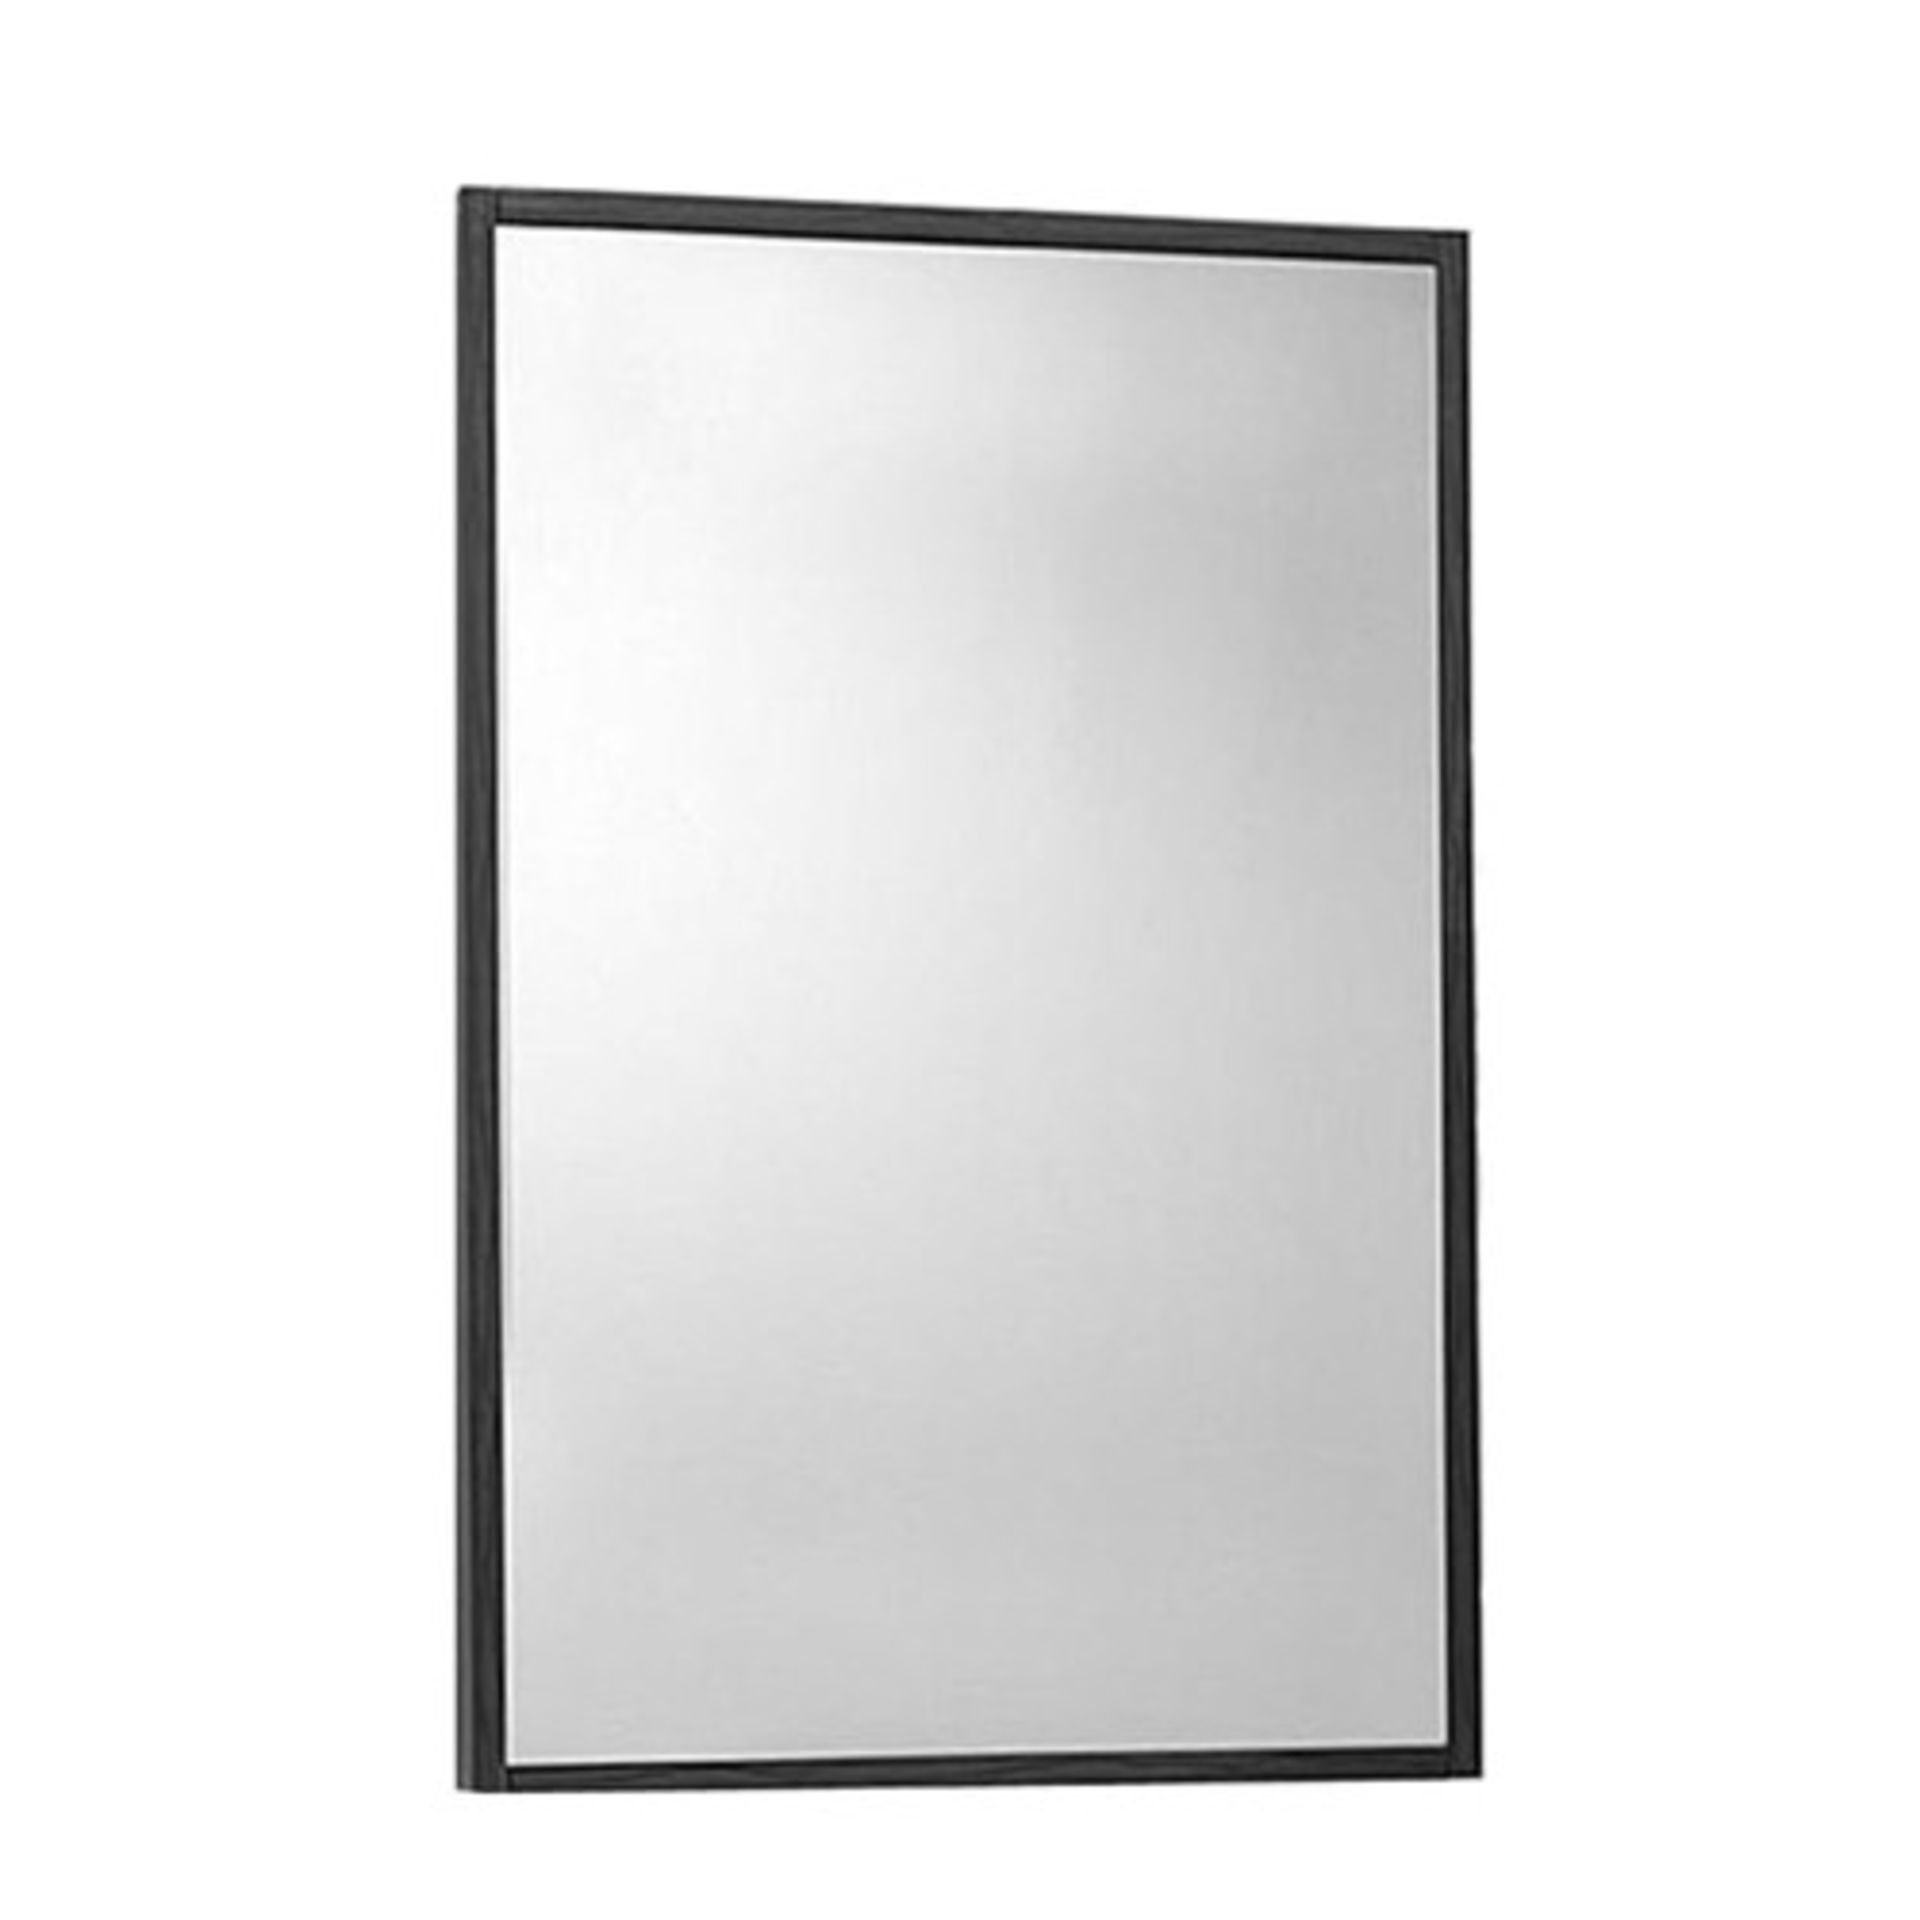 1 x Premier Glide Mirror - New & Boxed Stock - Ref: LQ004 - Location: Cheadle SK8